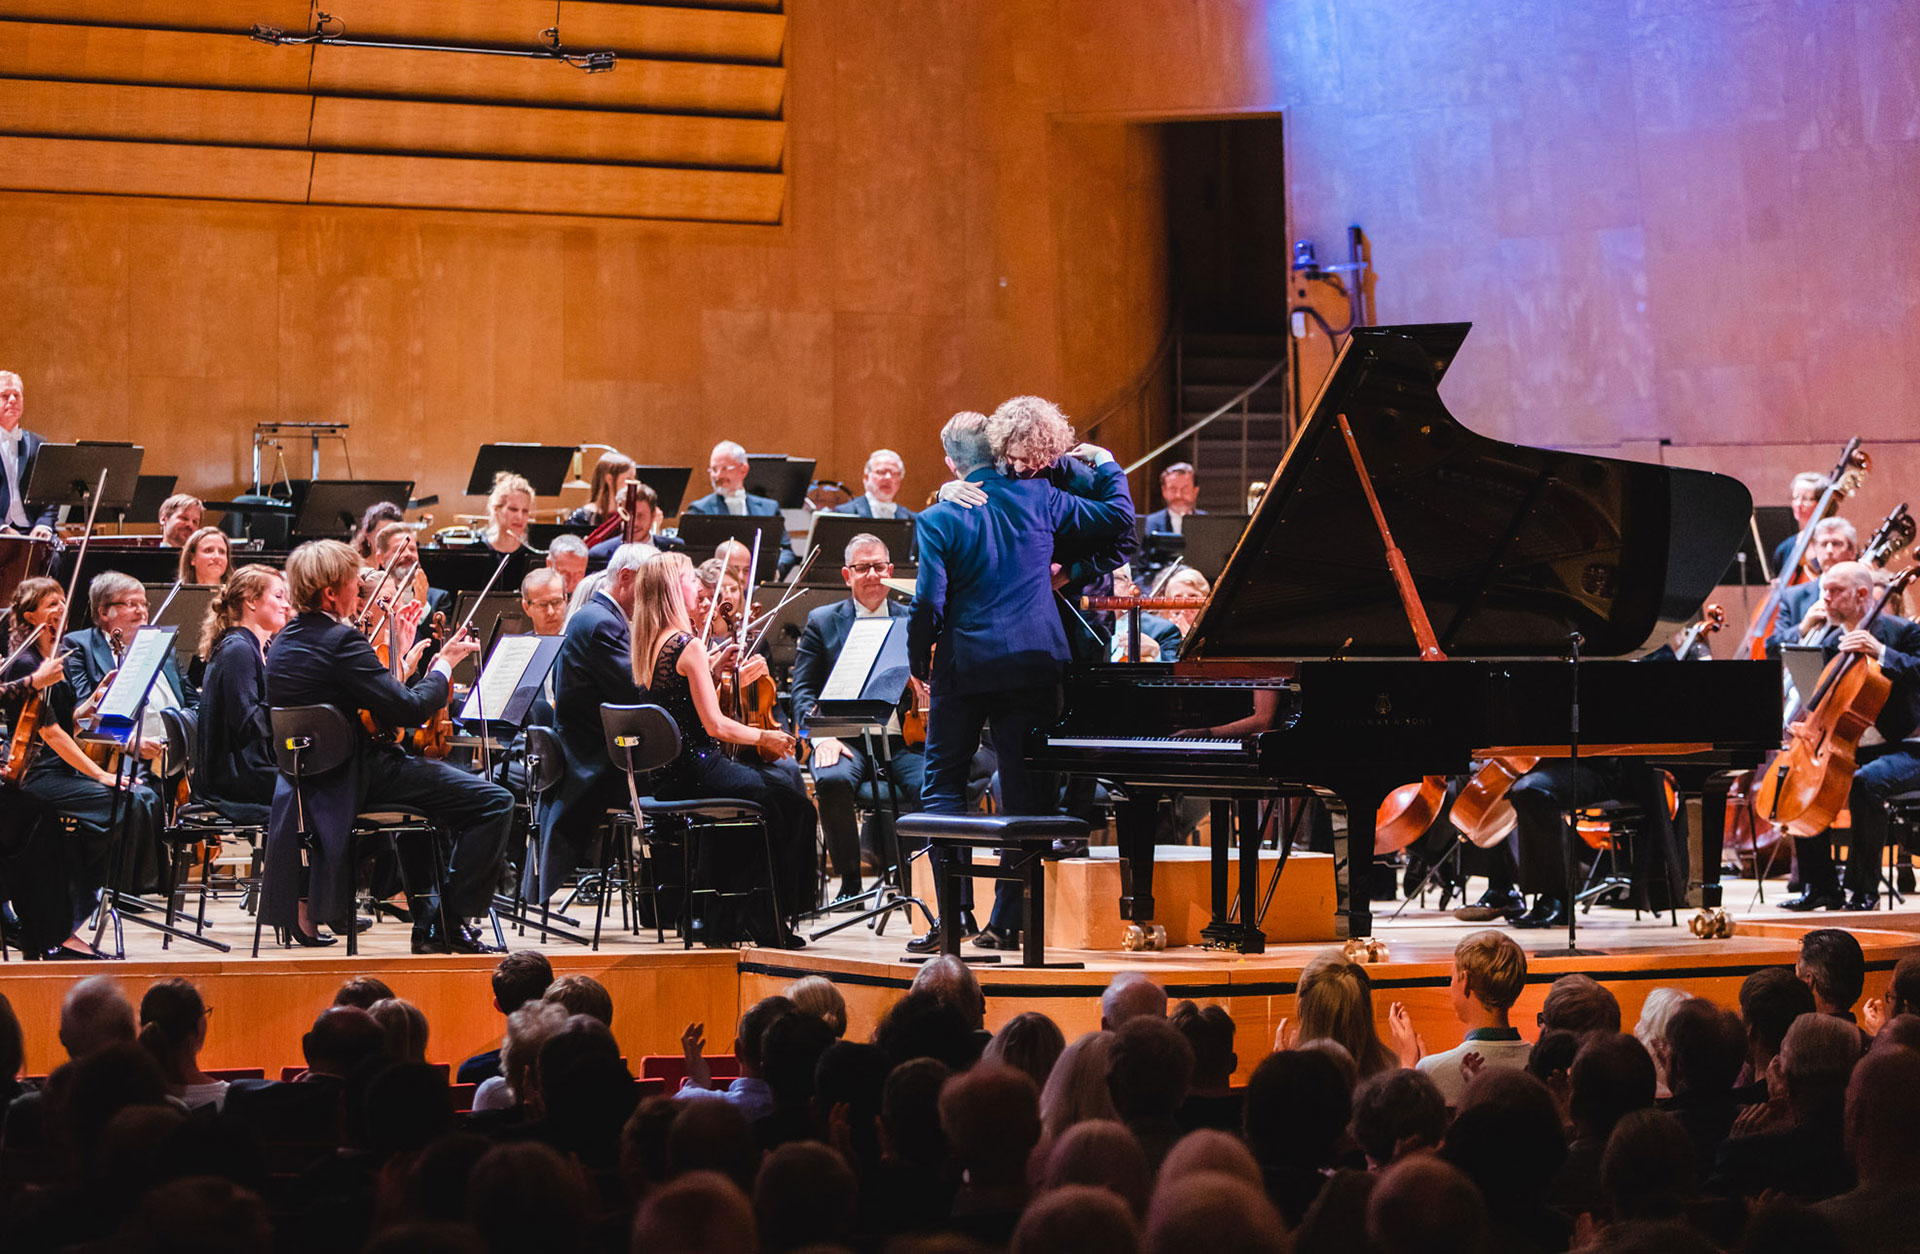 Pianist och dirigent kramas på scenen efter konsertens slut, orkestern syns i bakgrunden.